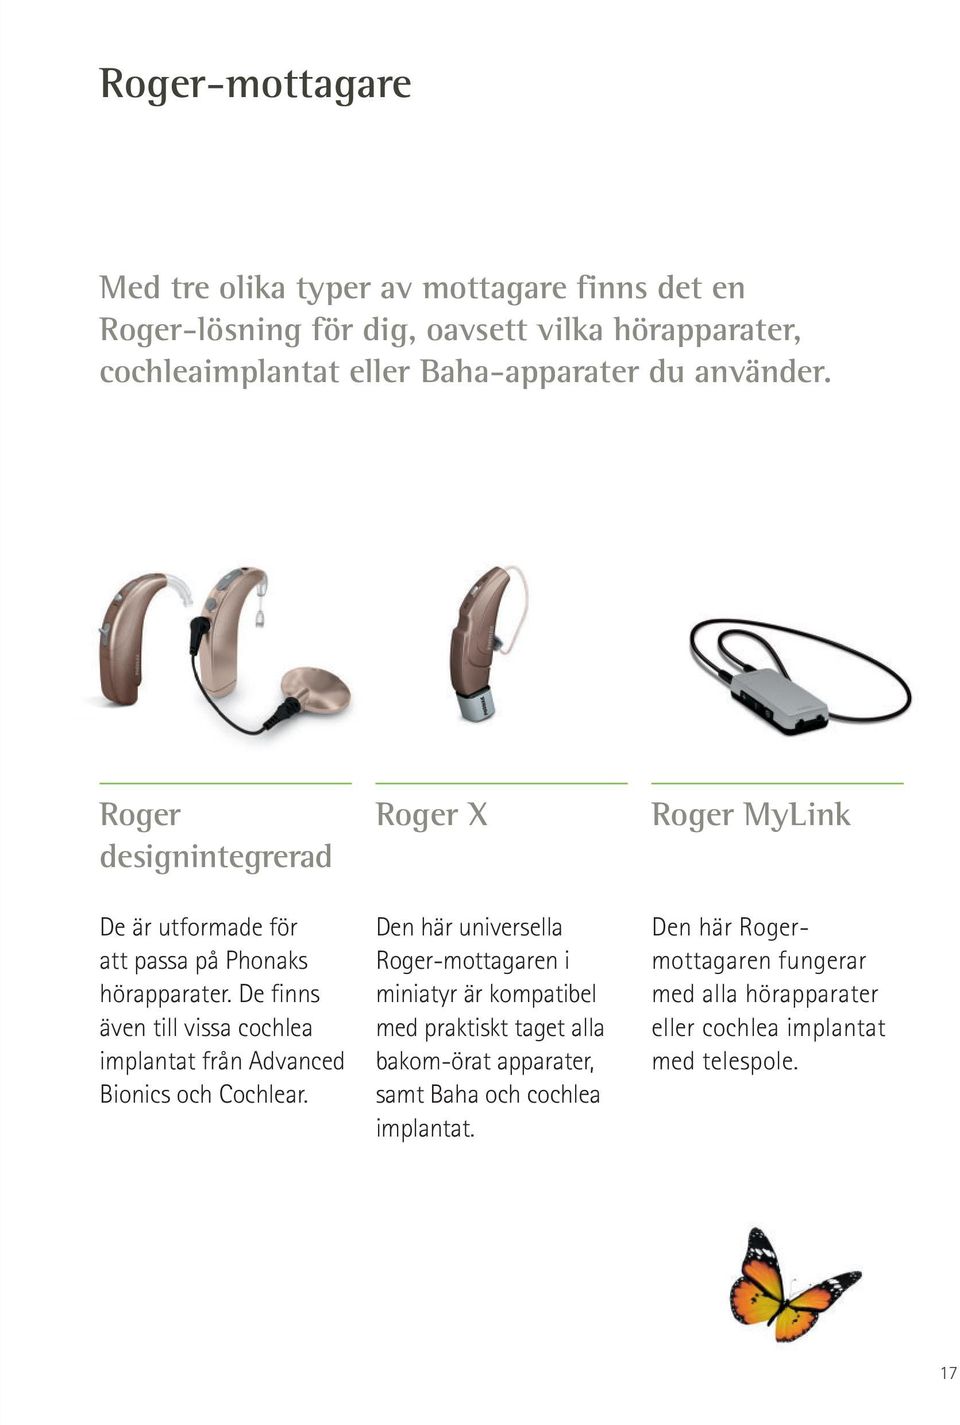 De finns även till vissa cochlea implantat från Advanced Bionics och Cochlear.